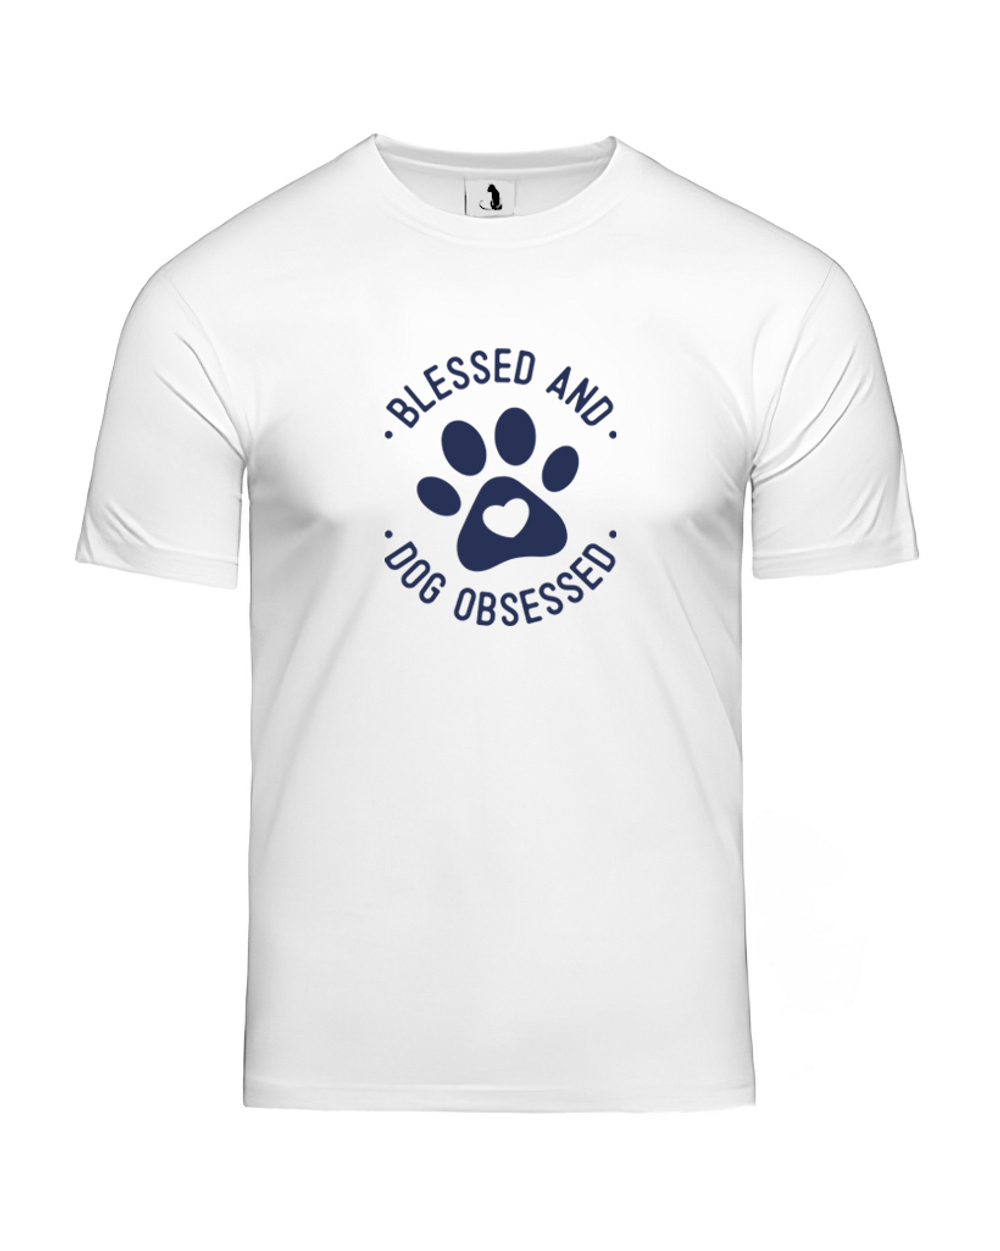 Футболка Blessed and dog obsessed unisex белая с синим рисунком